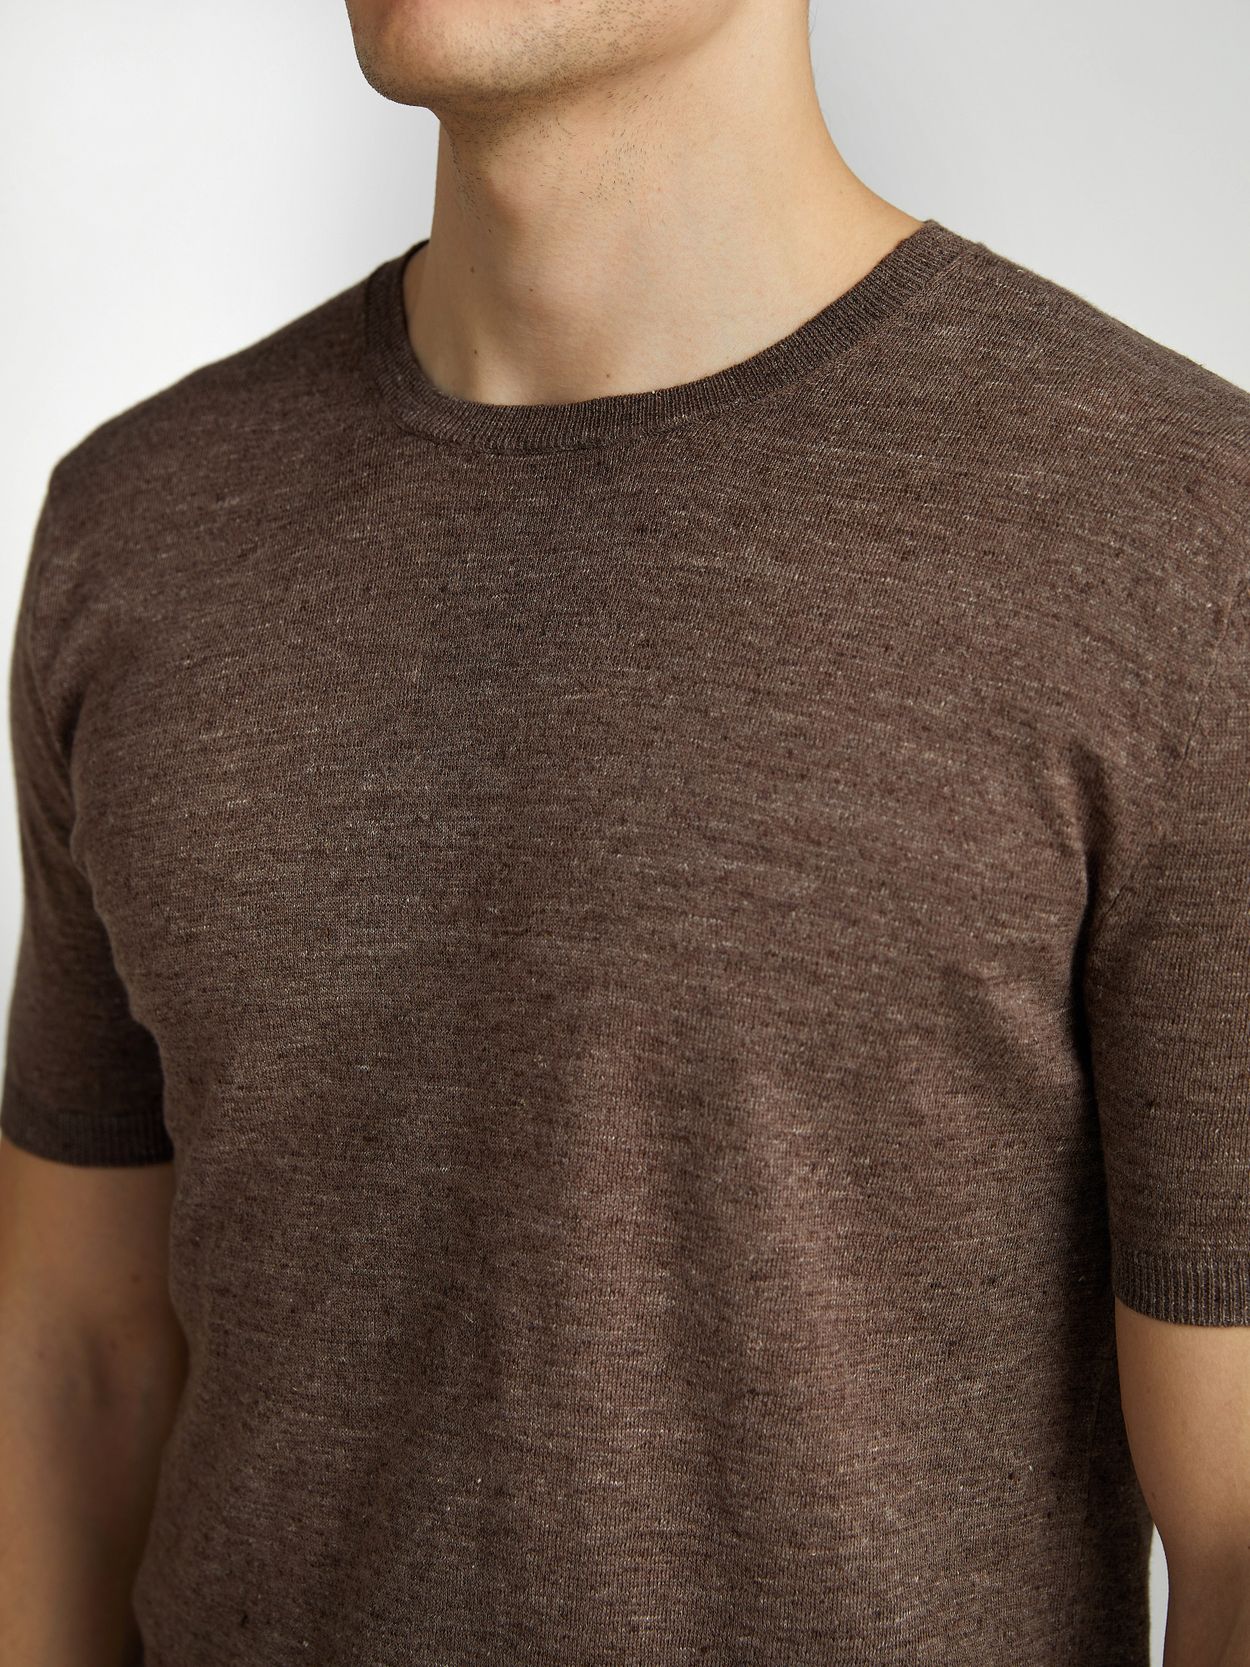 Brun T-Shirt